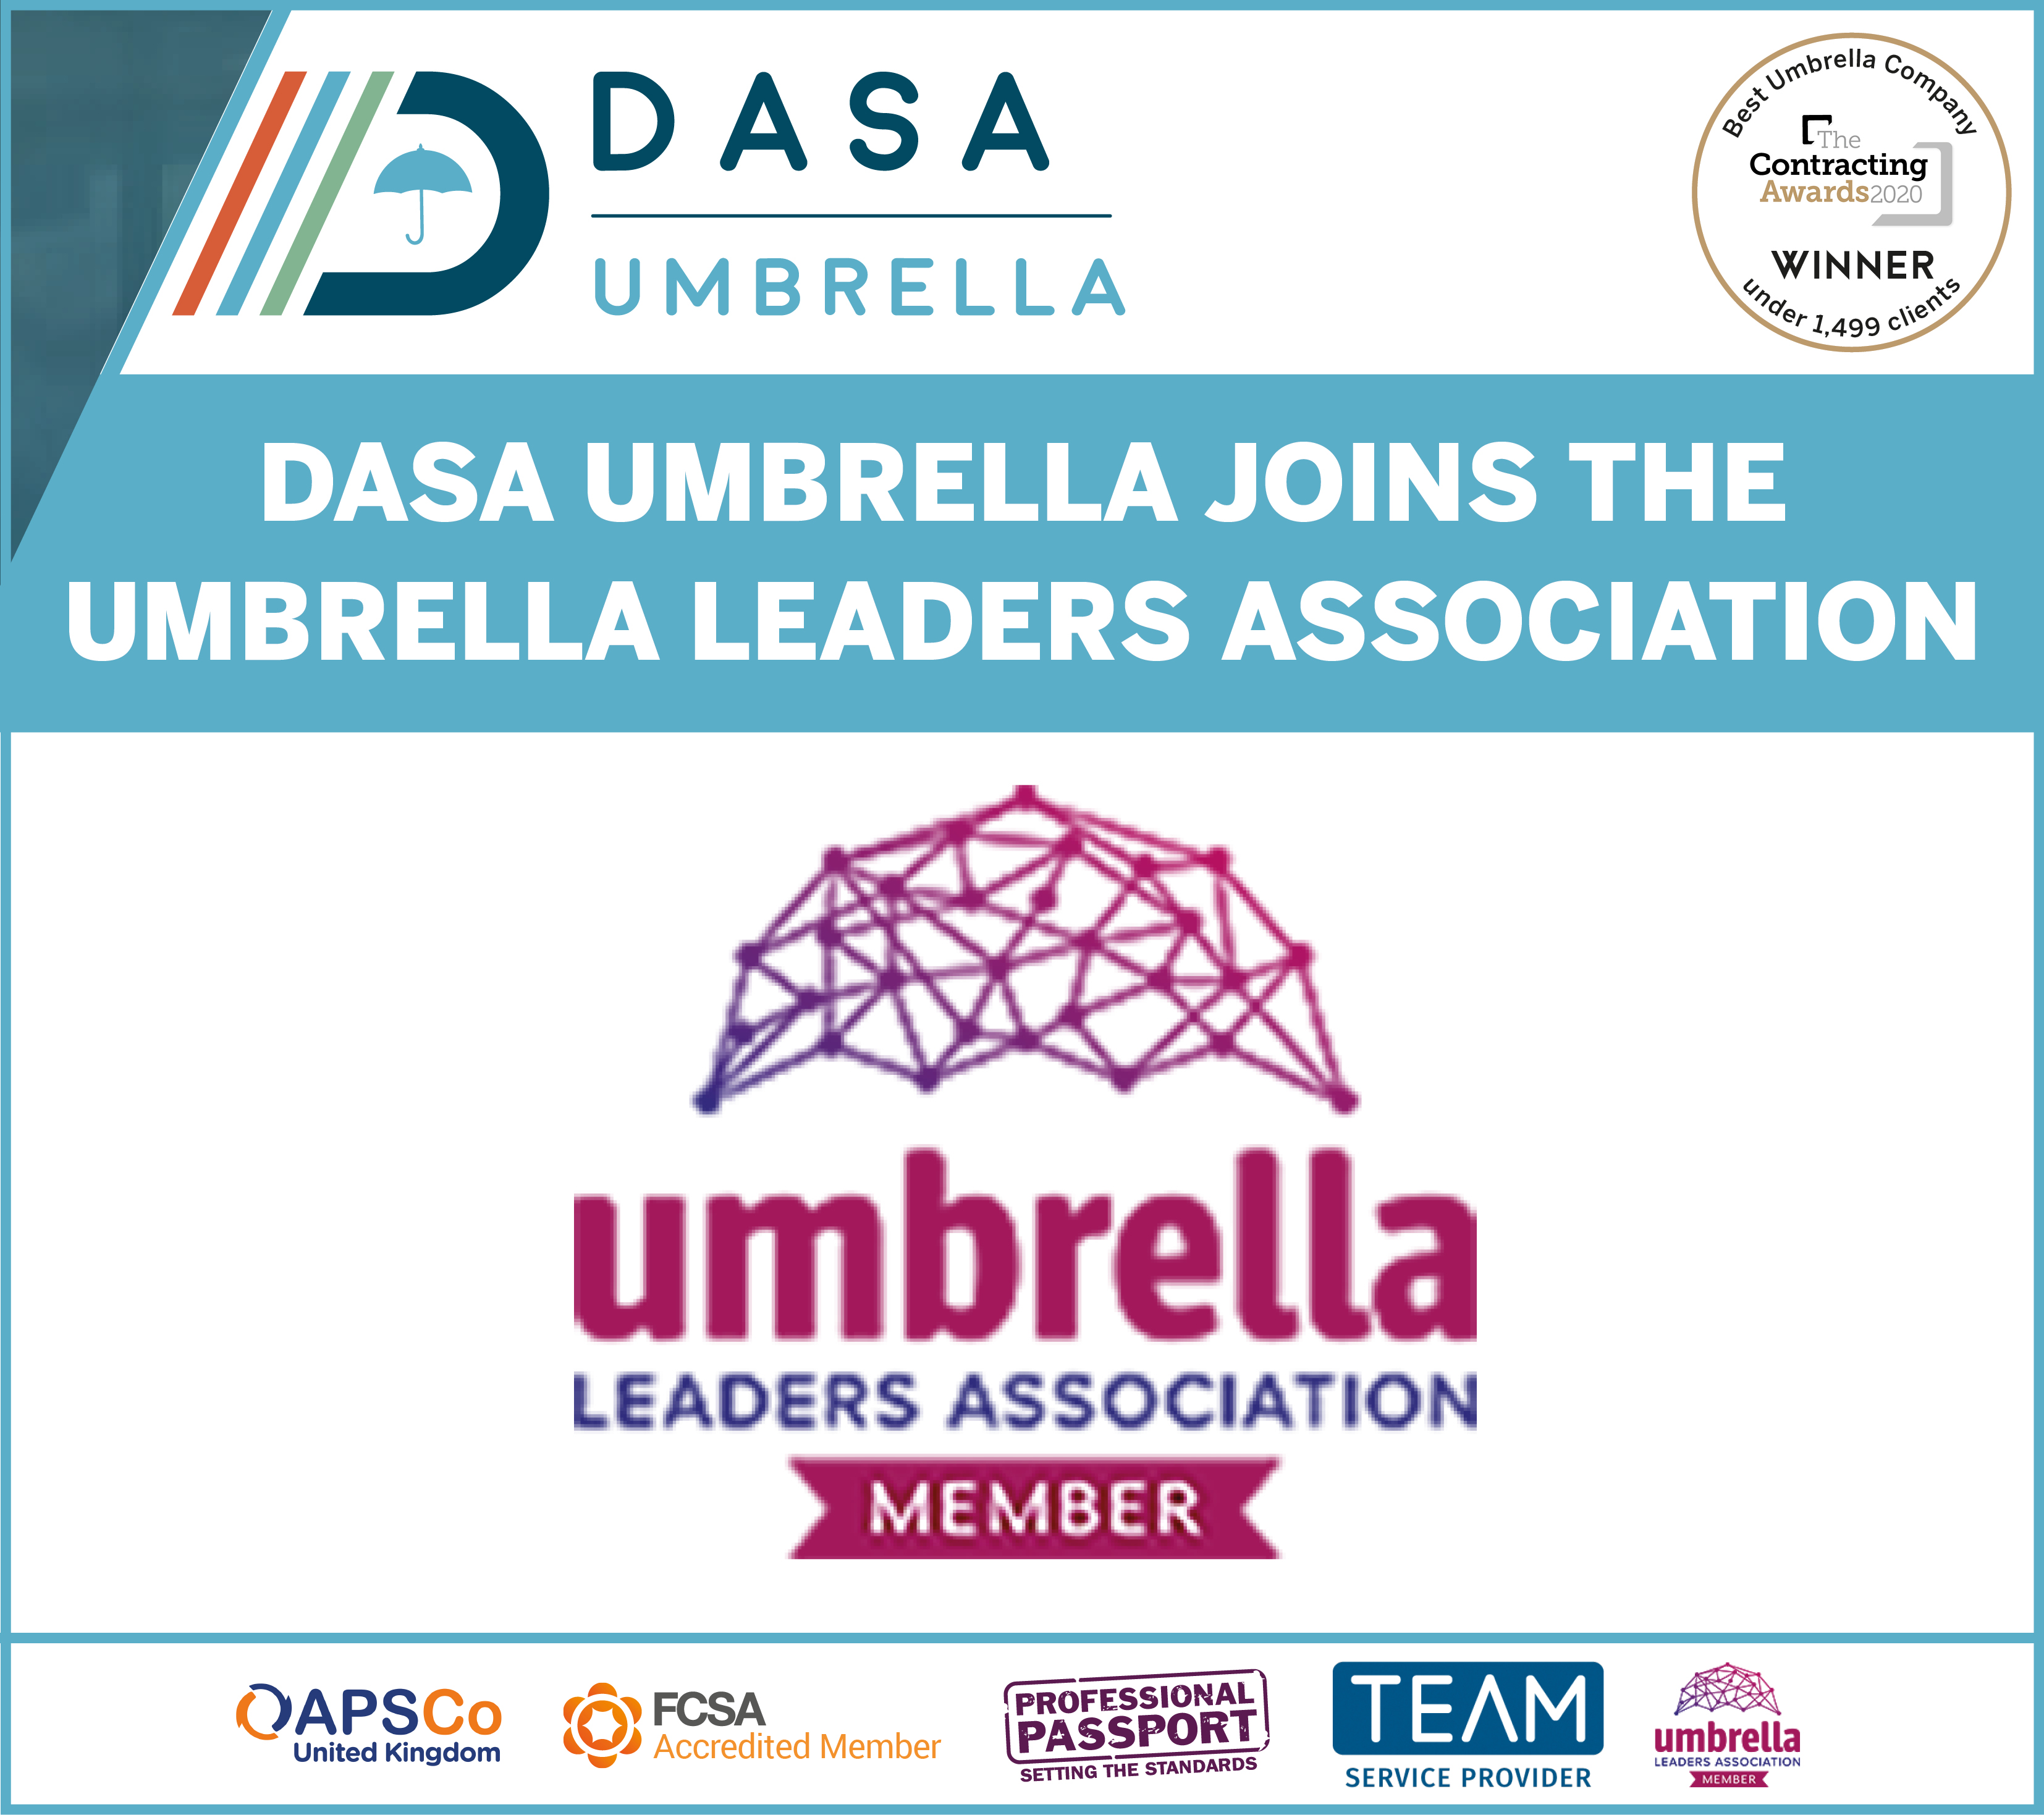 DASA Umbrella Joins the Umbrella Leaders Association